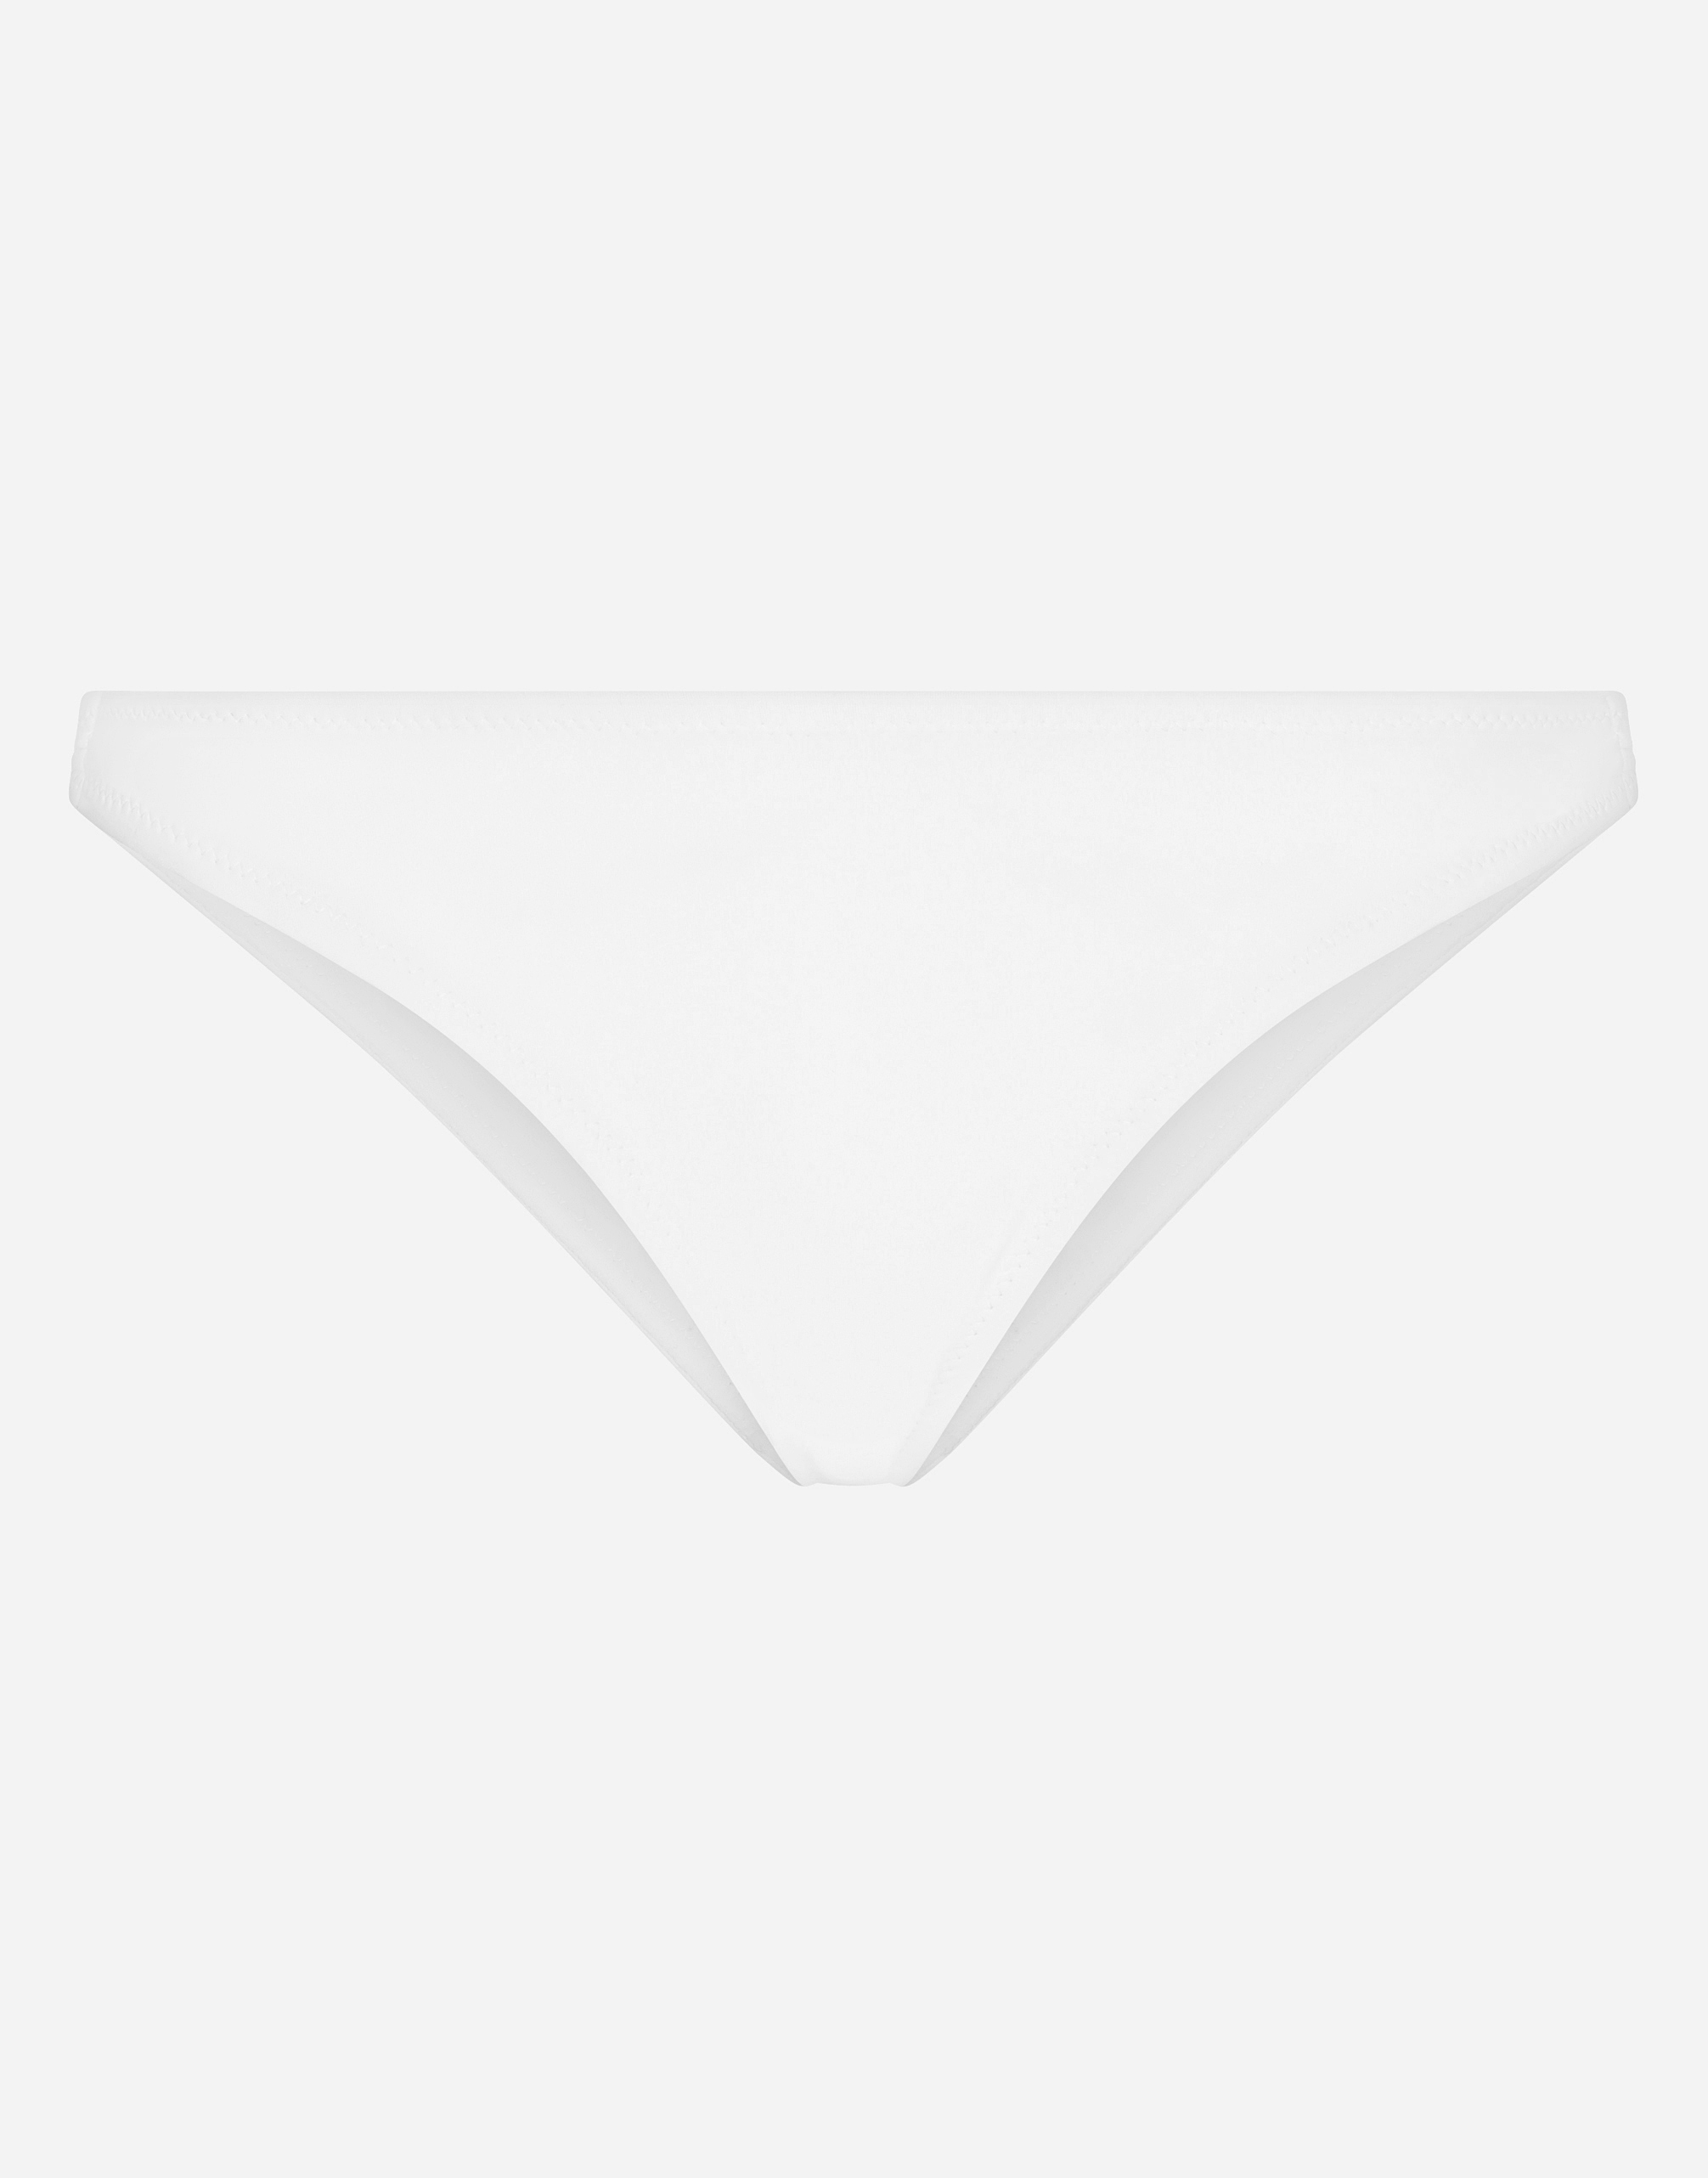 Dolce & Gabbana White Sunflower Swimwear Beachwear Bikini Bottom • Fashion  Brands Outlet